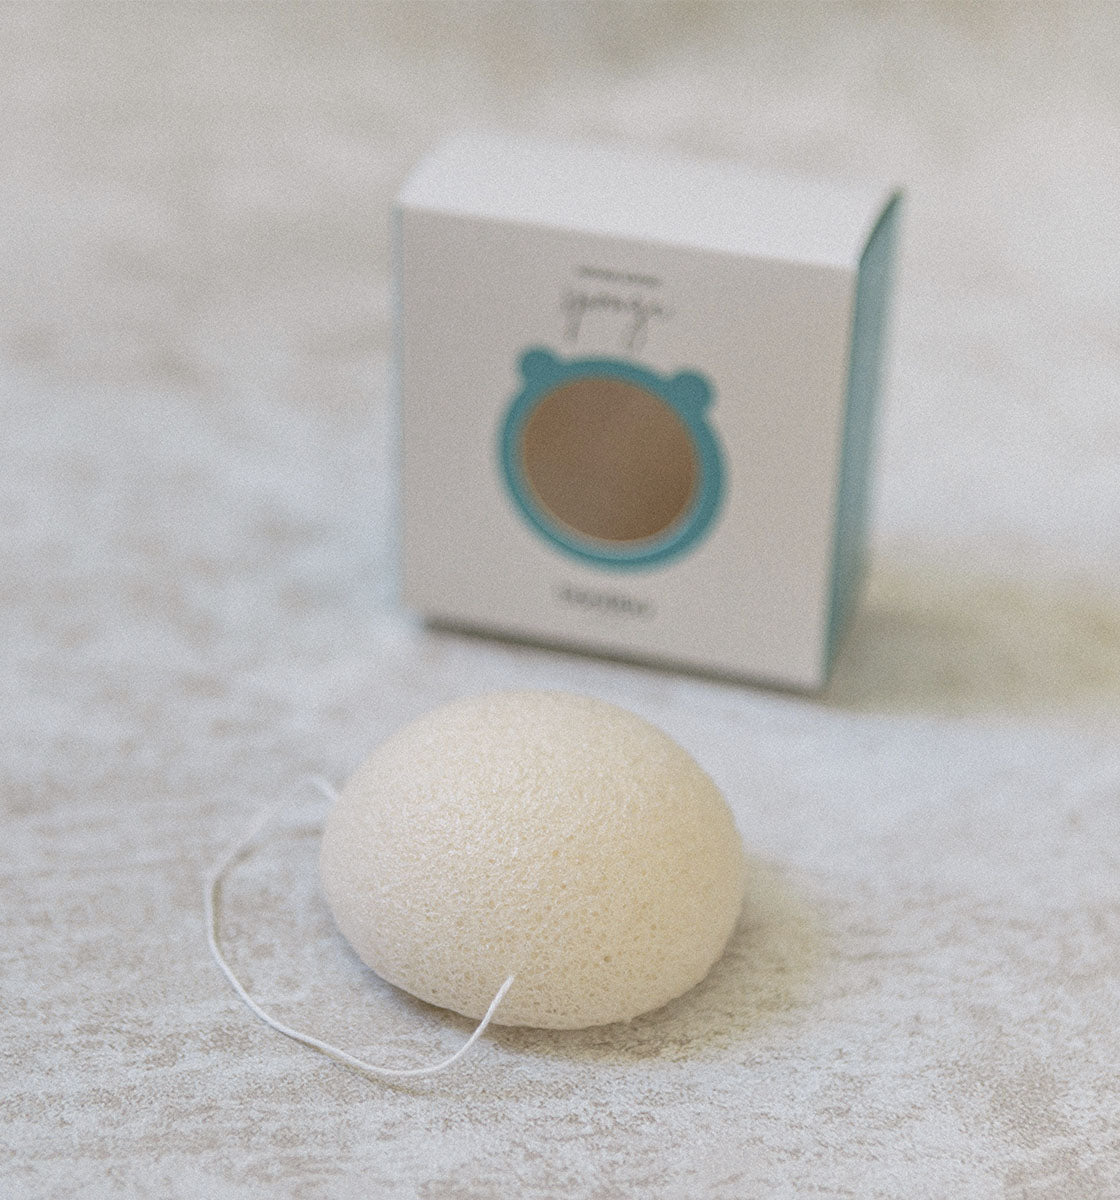 Super Salon - #ZUUM Baby cuenta con la esponja natural hipoalergénica,  recomendada para el baño diario, limpia con suavidad la delicada piel del  bebé. Confeccionada con materiales 100% naturales, procedentes del fondo